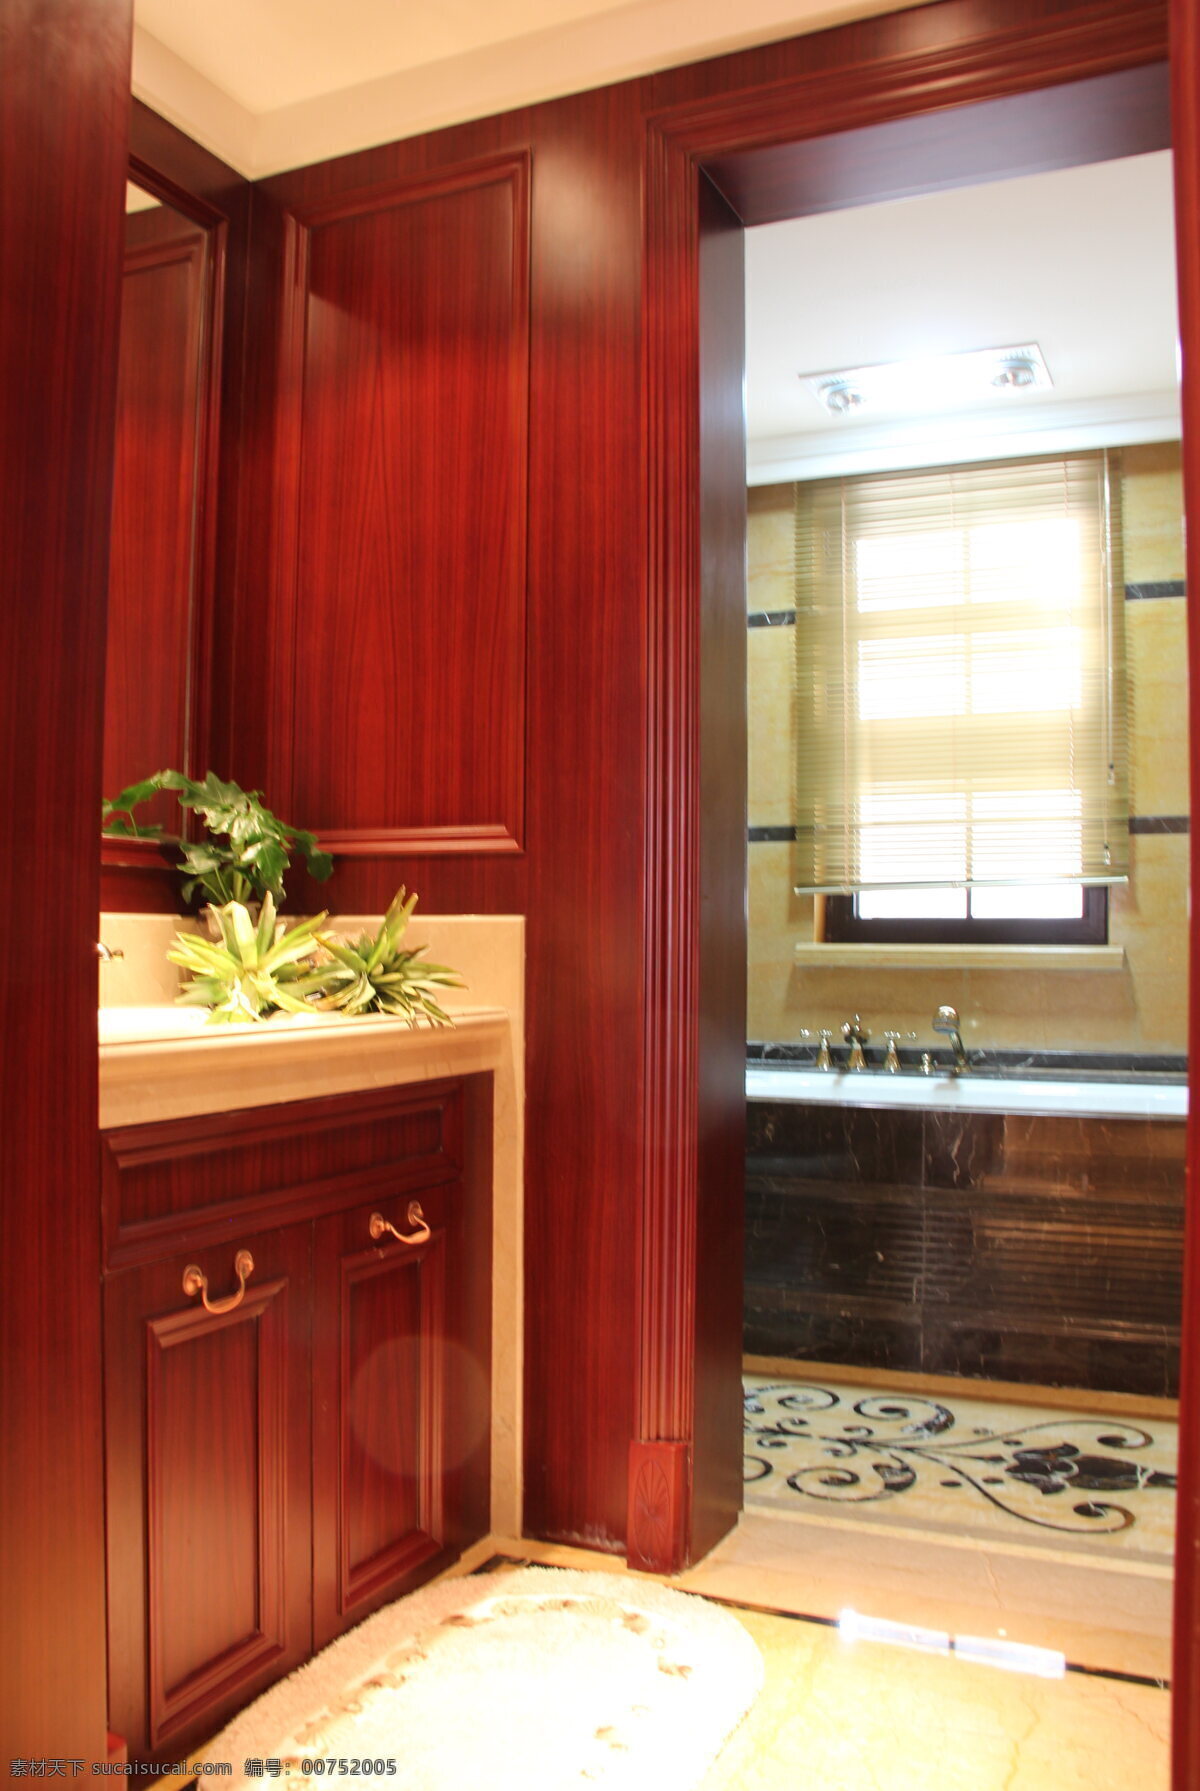 中式 时尚 浴室 深 红色 背景 墙 室内装修 效果图 木制背景墙 浴室装修 花纹地板 白色桌面